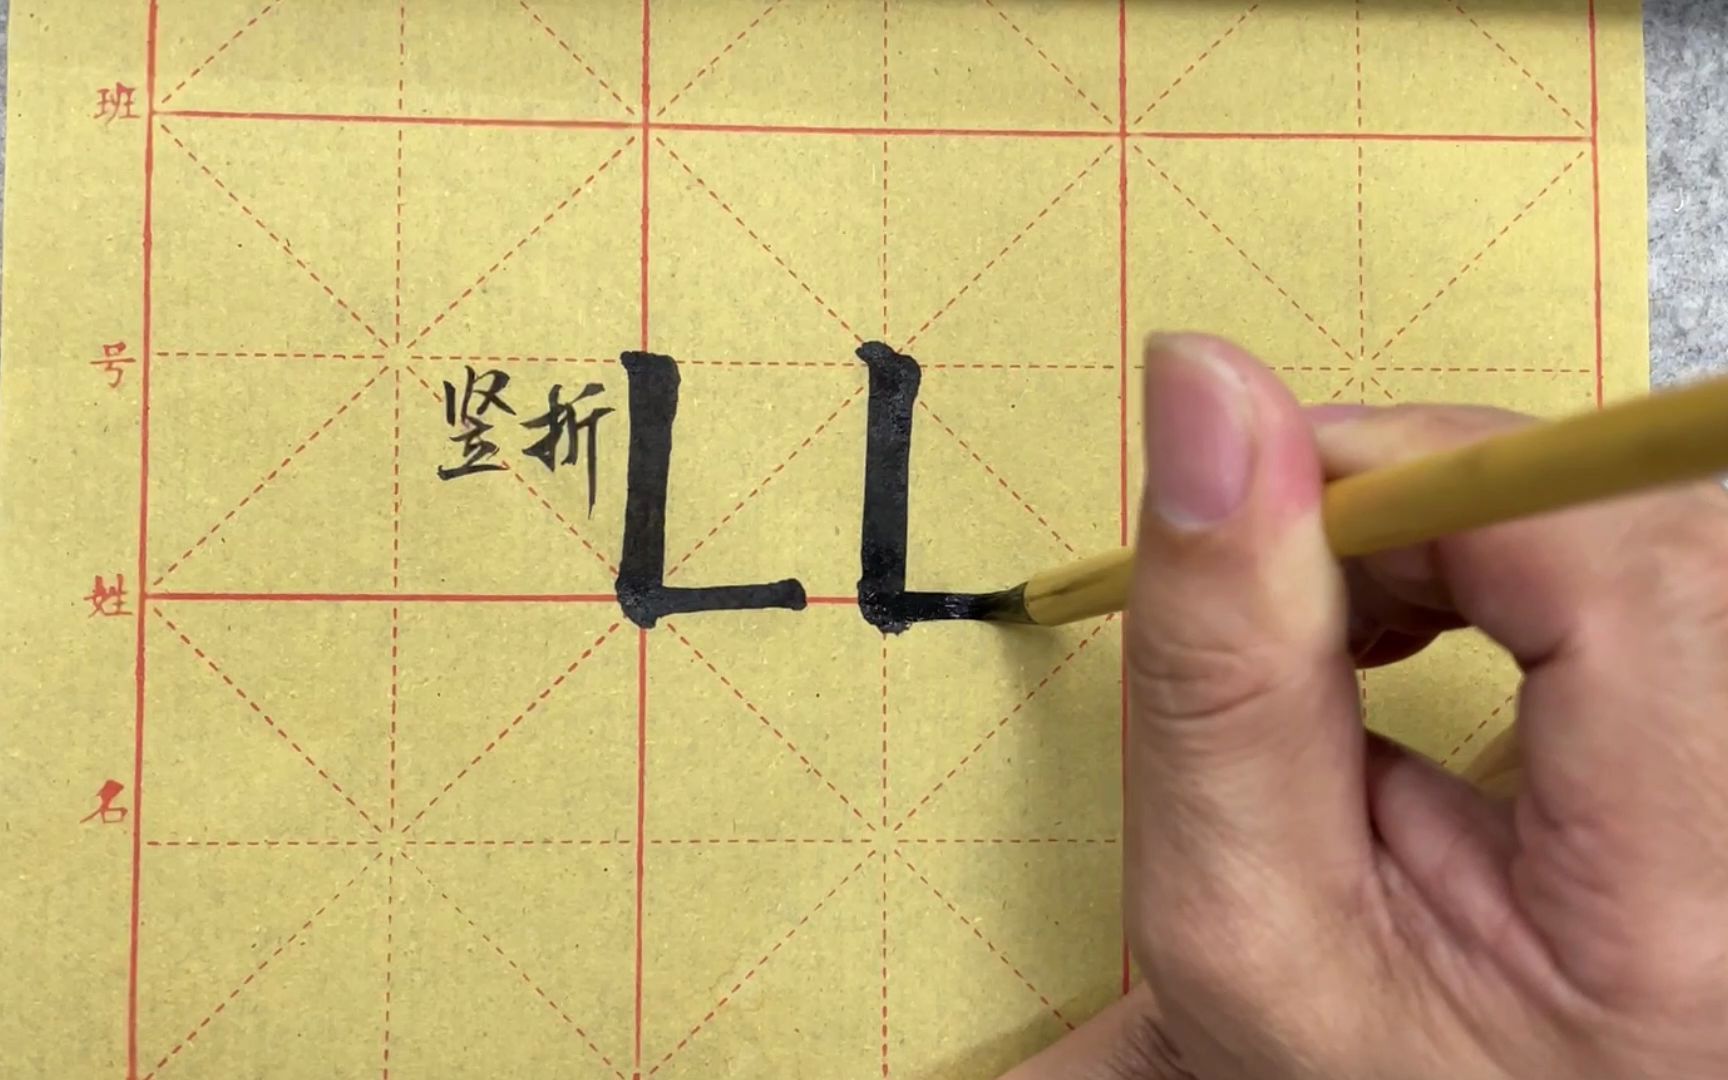 欧楷教学视频:竖折的写法